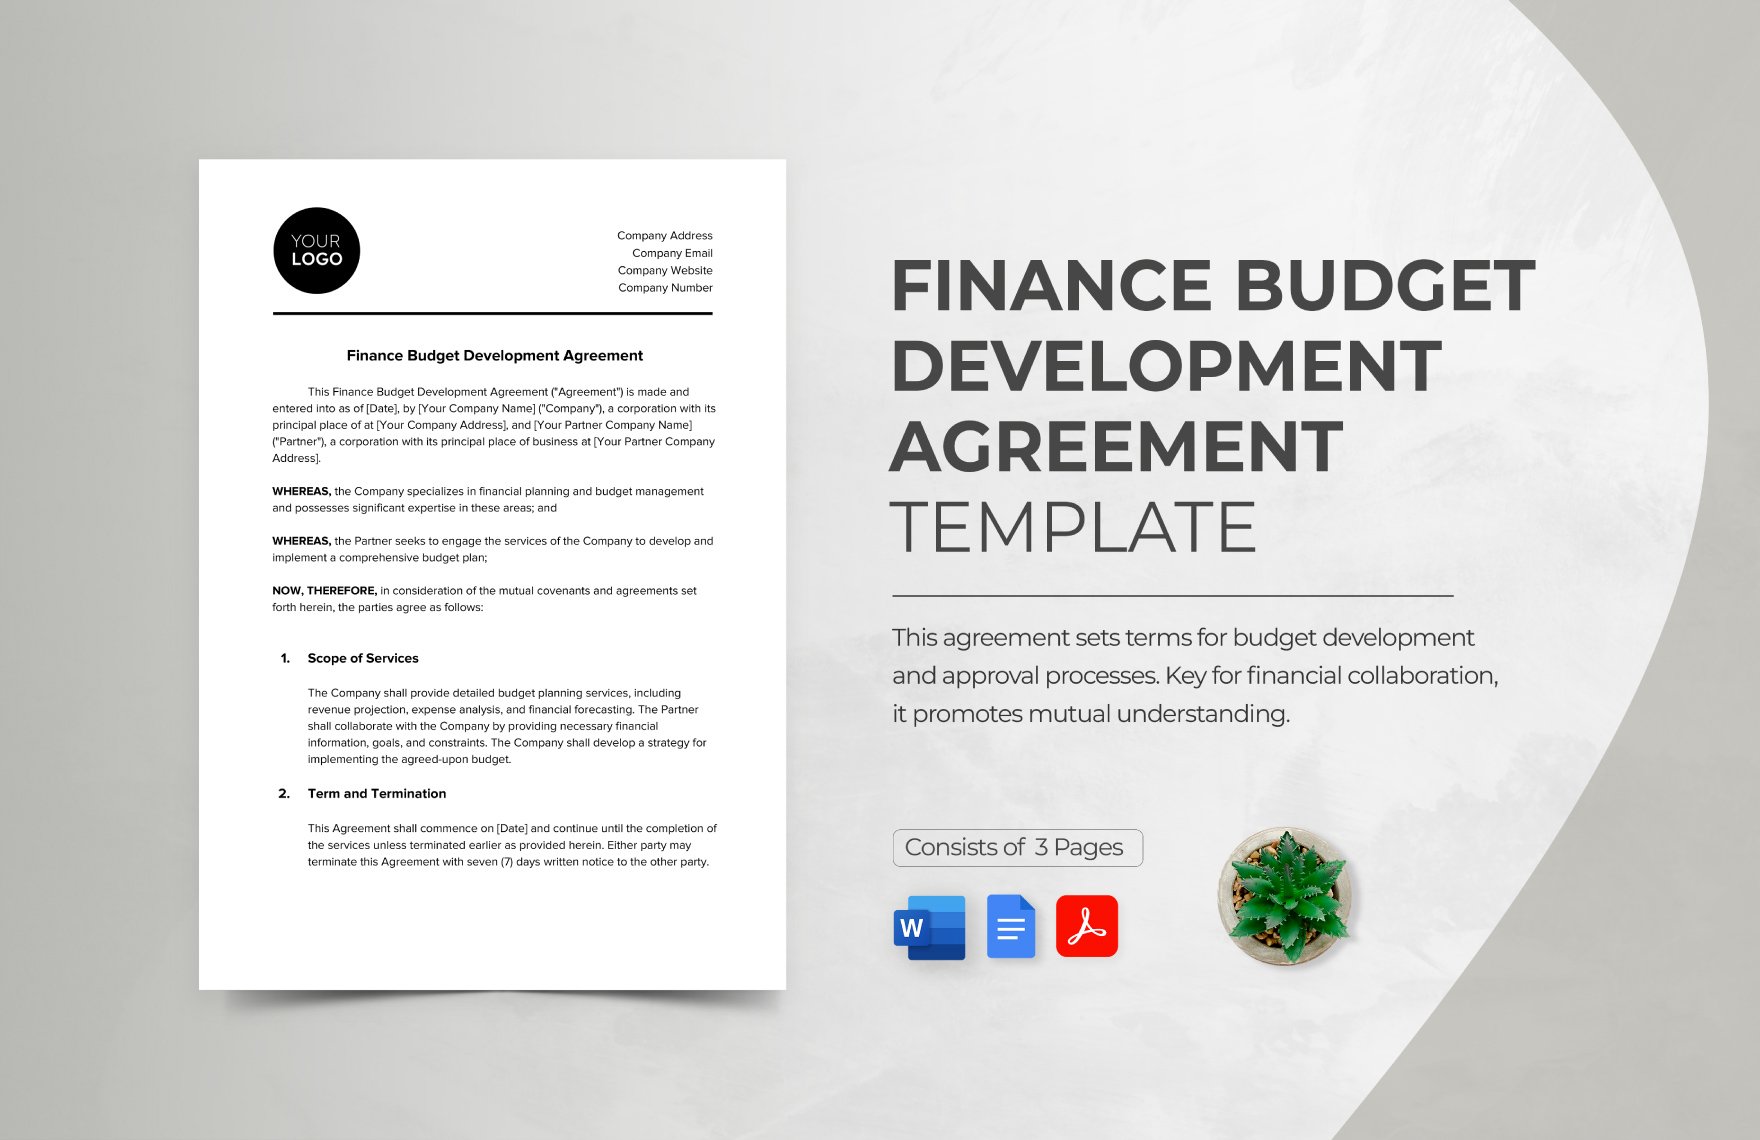 Finance Budget Development Agreement Template